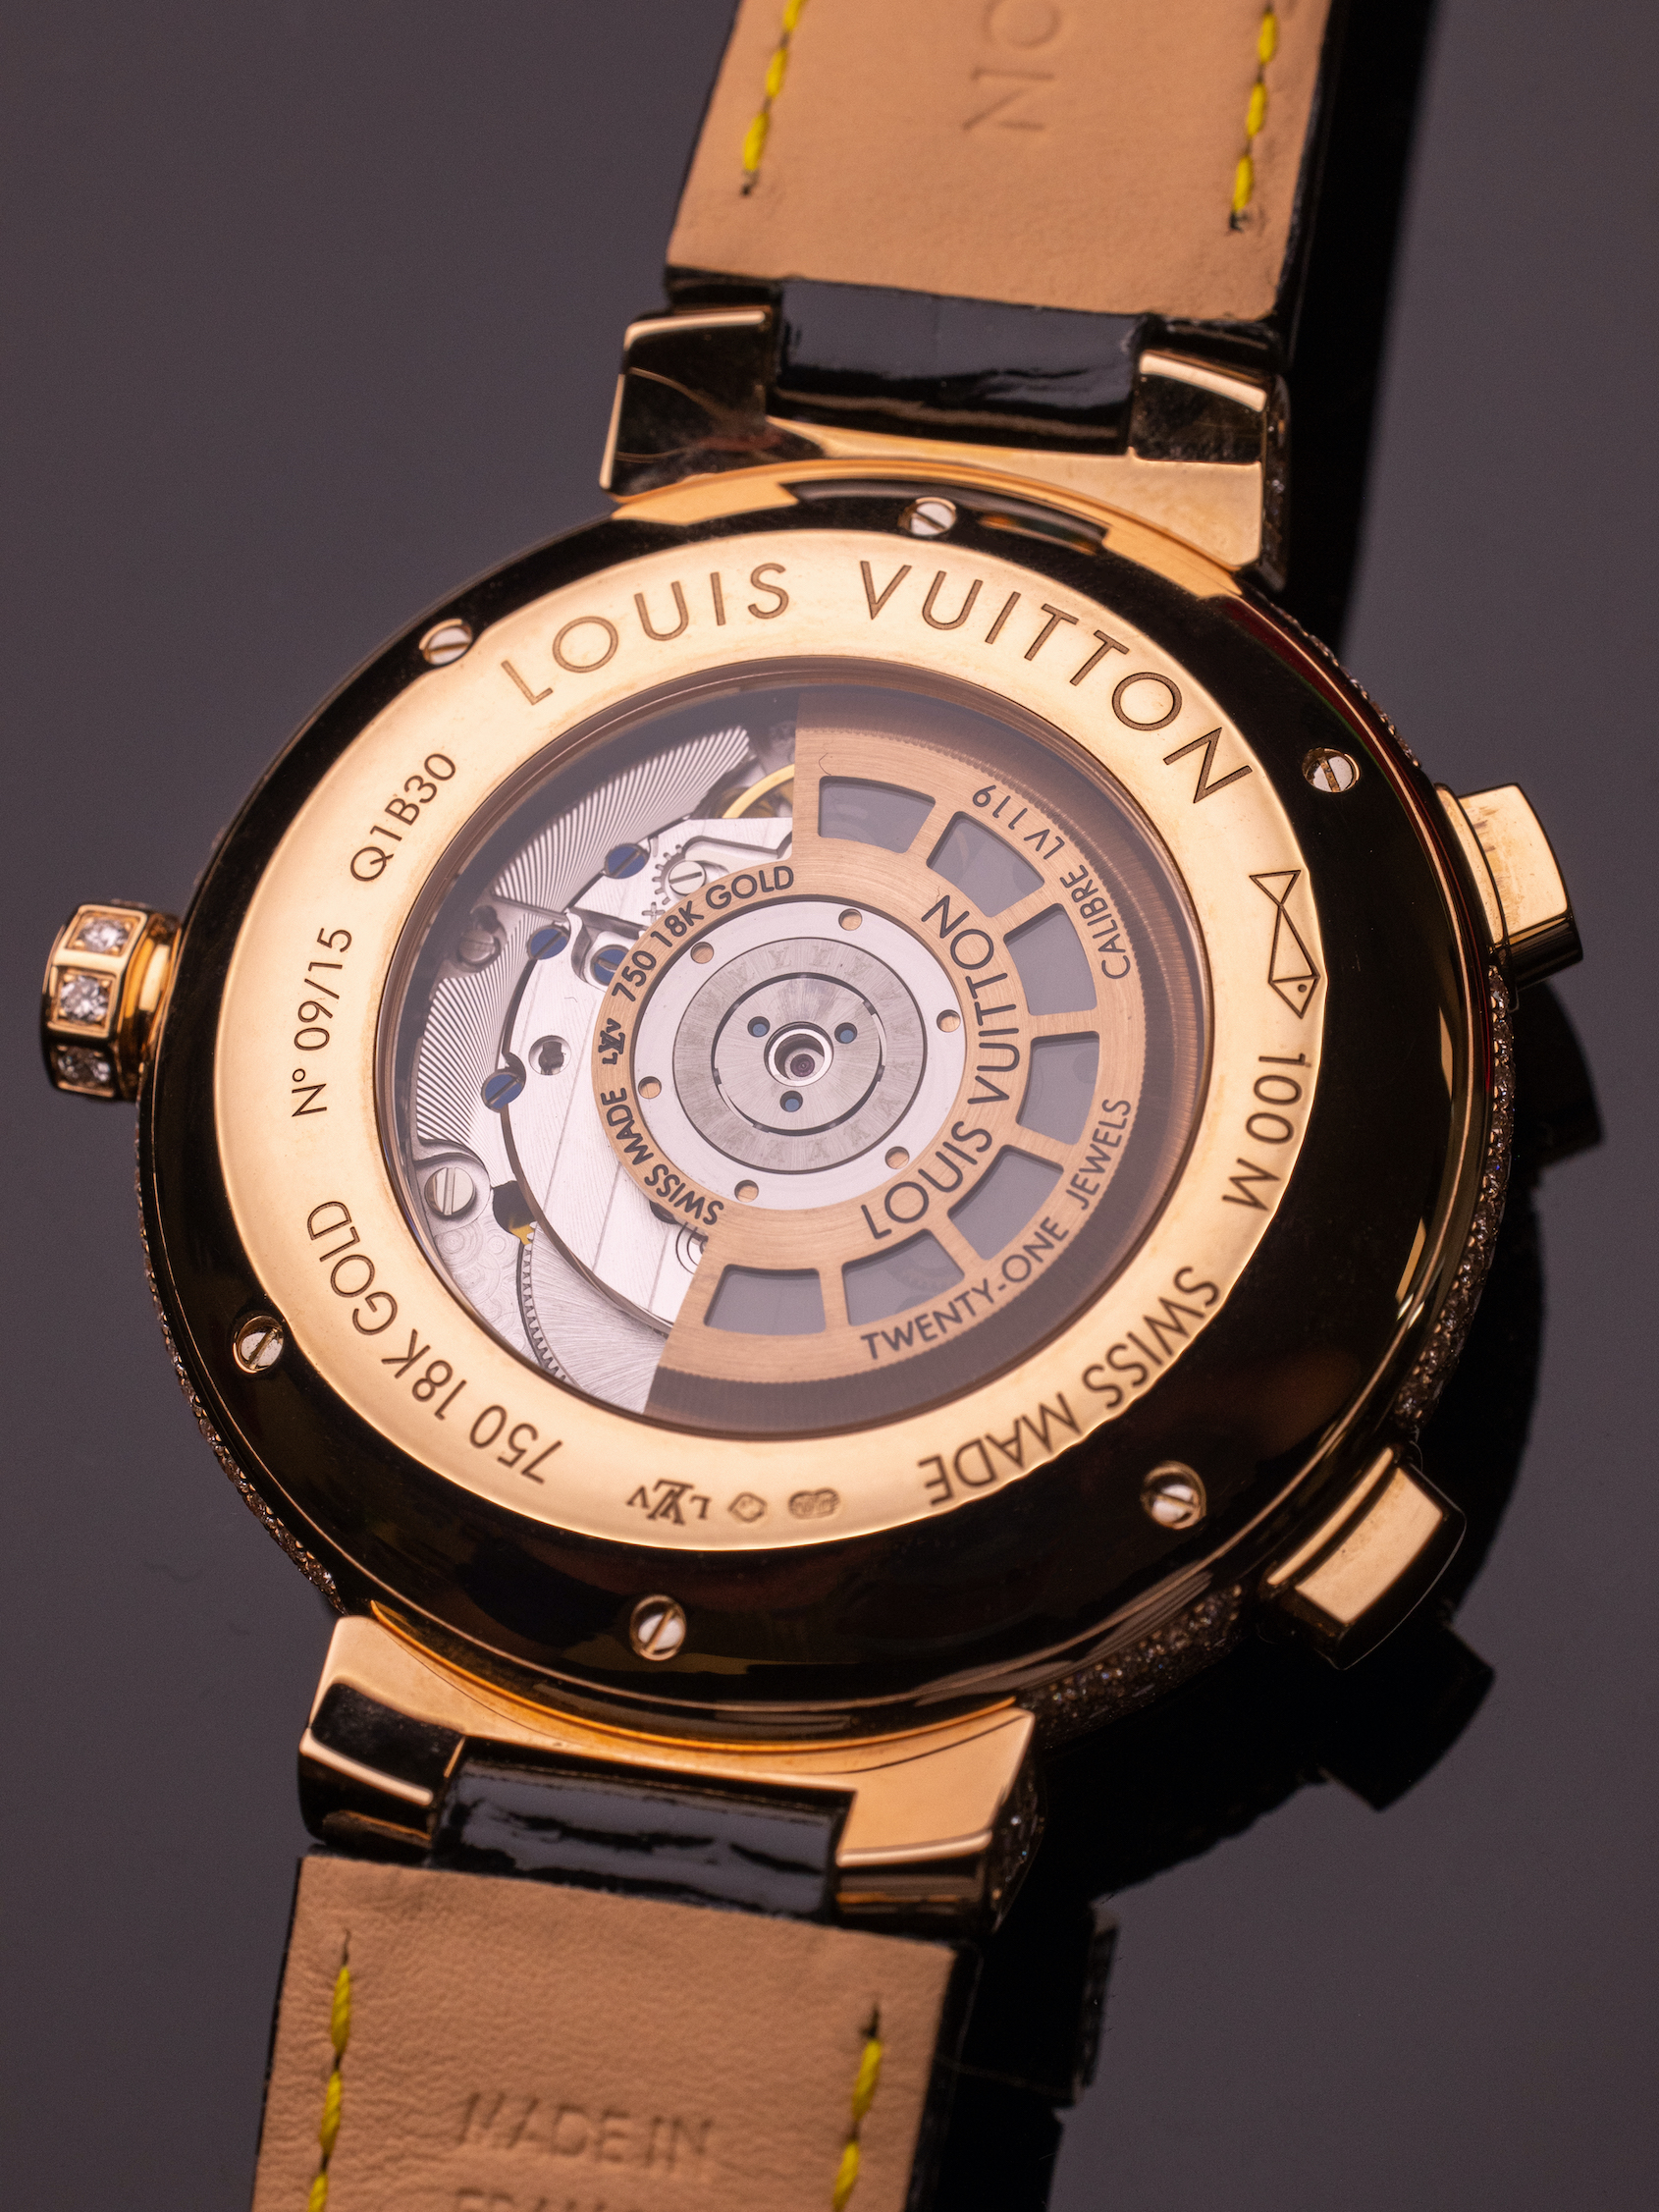 Louis Vuitton offre un tourbillon volant GMT unique pour la bonne cause